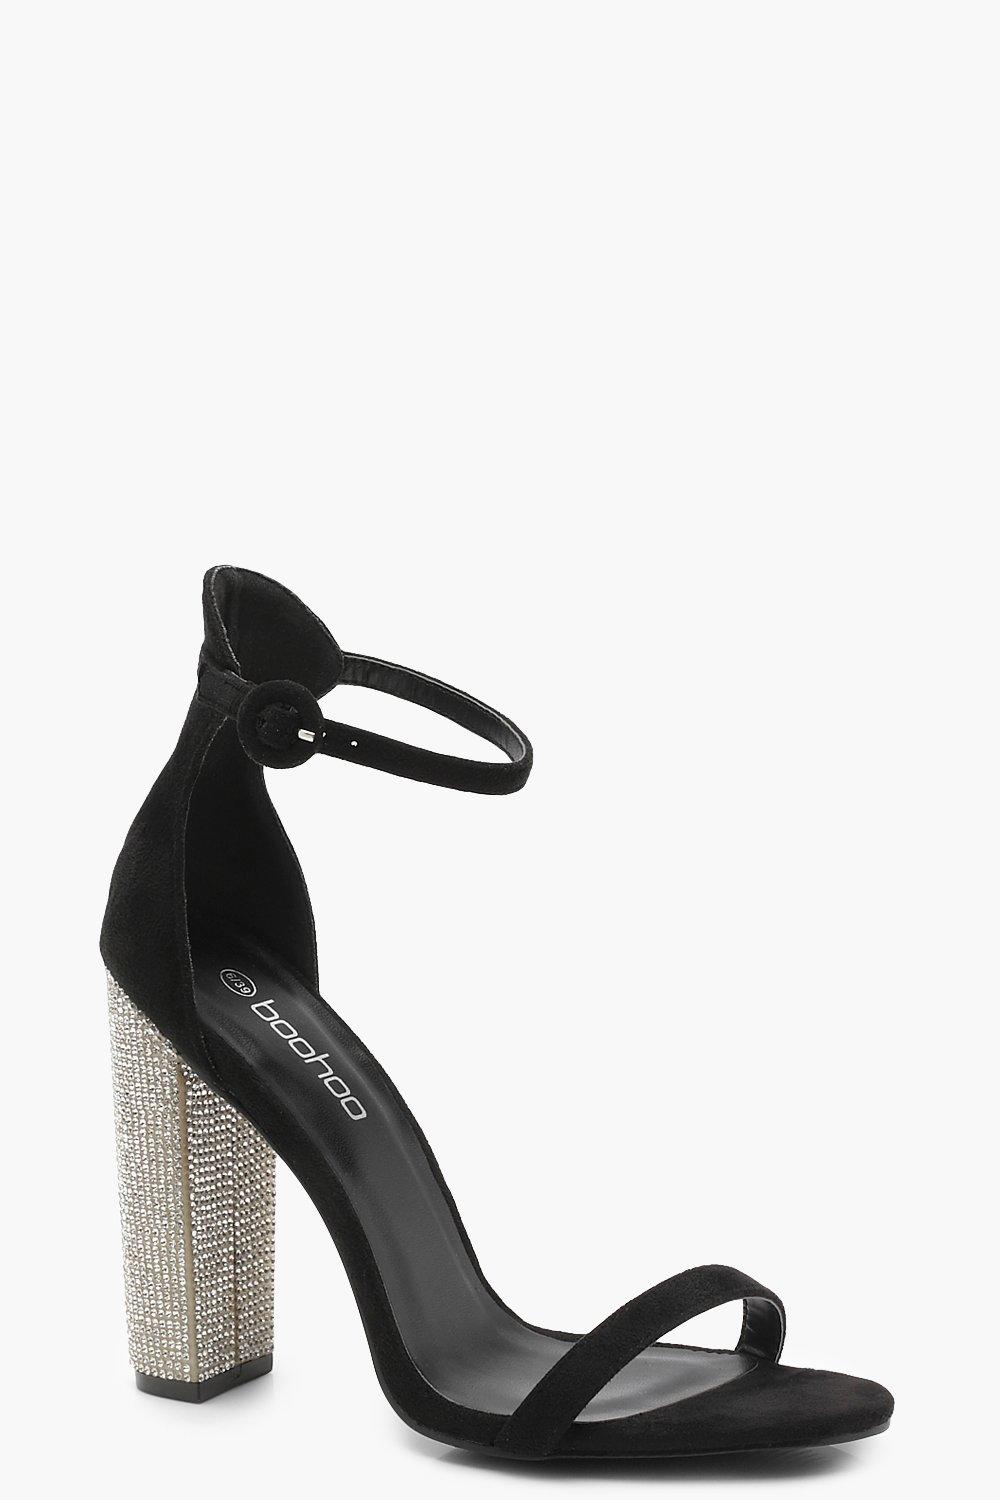 diamante heels